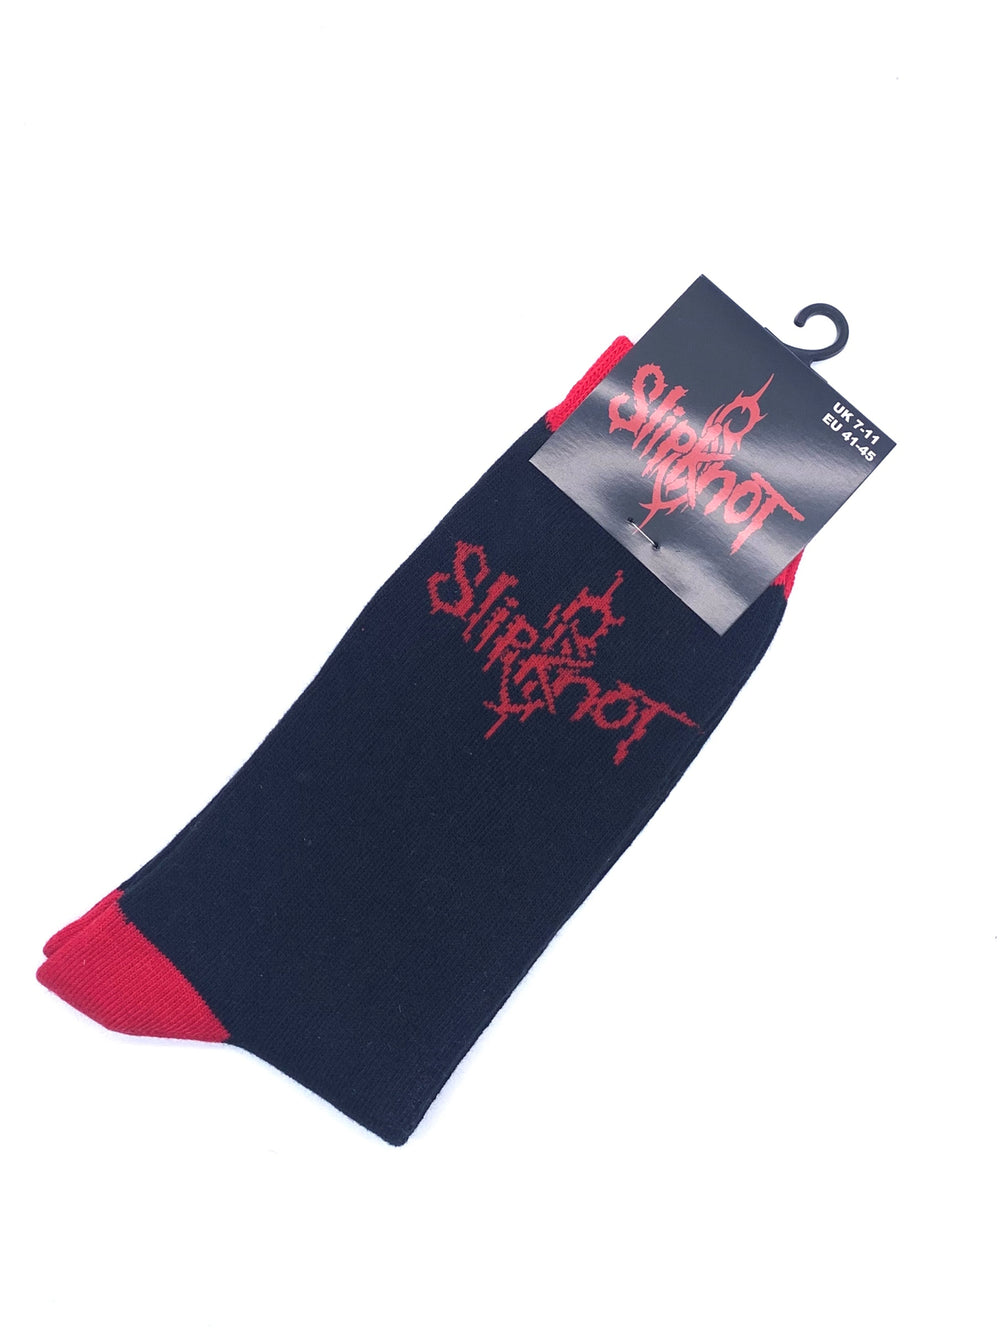 Slipknot Logo Official Product 1 Pair Jacquard Socks Size 7-11 UK Brand New